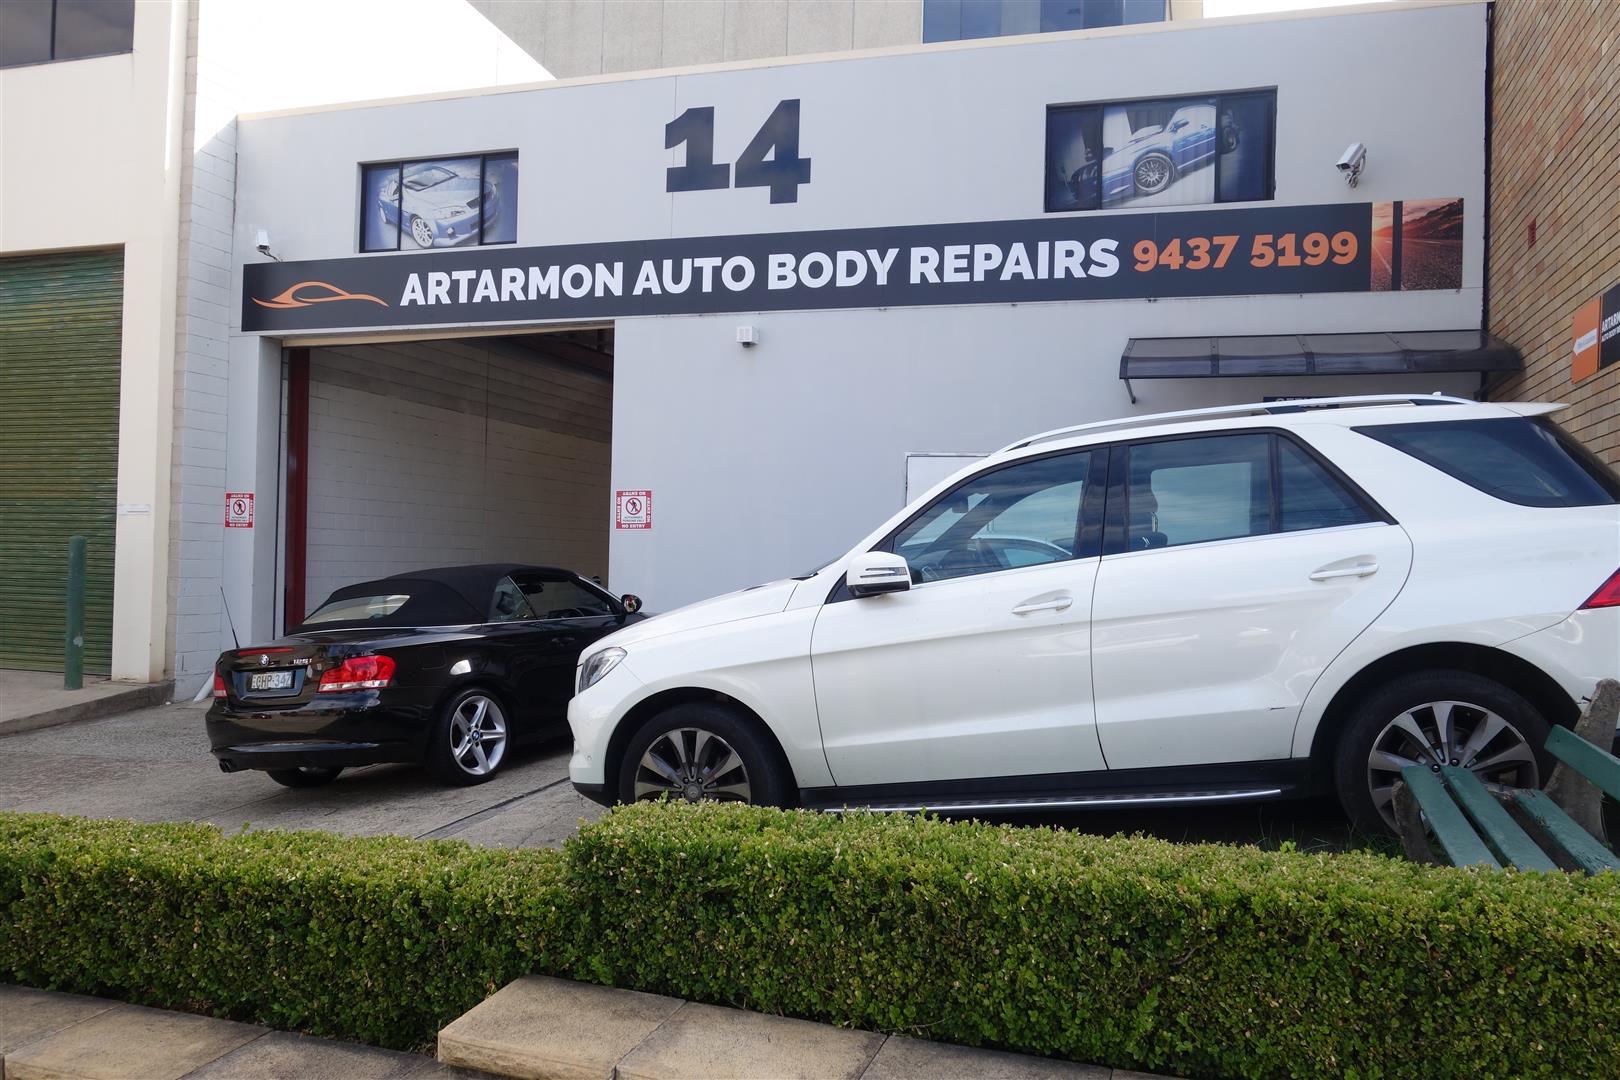 Artarmon Auto Body Repairs Photos